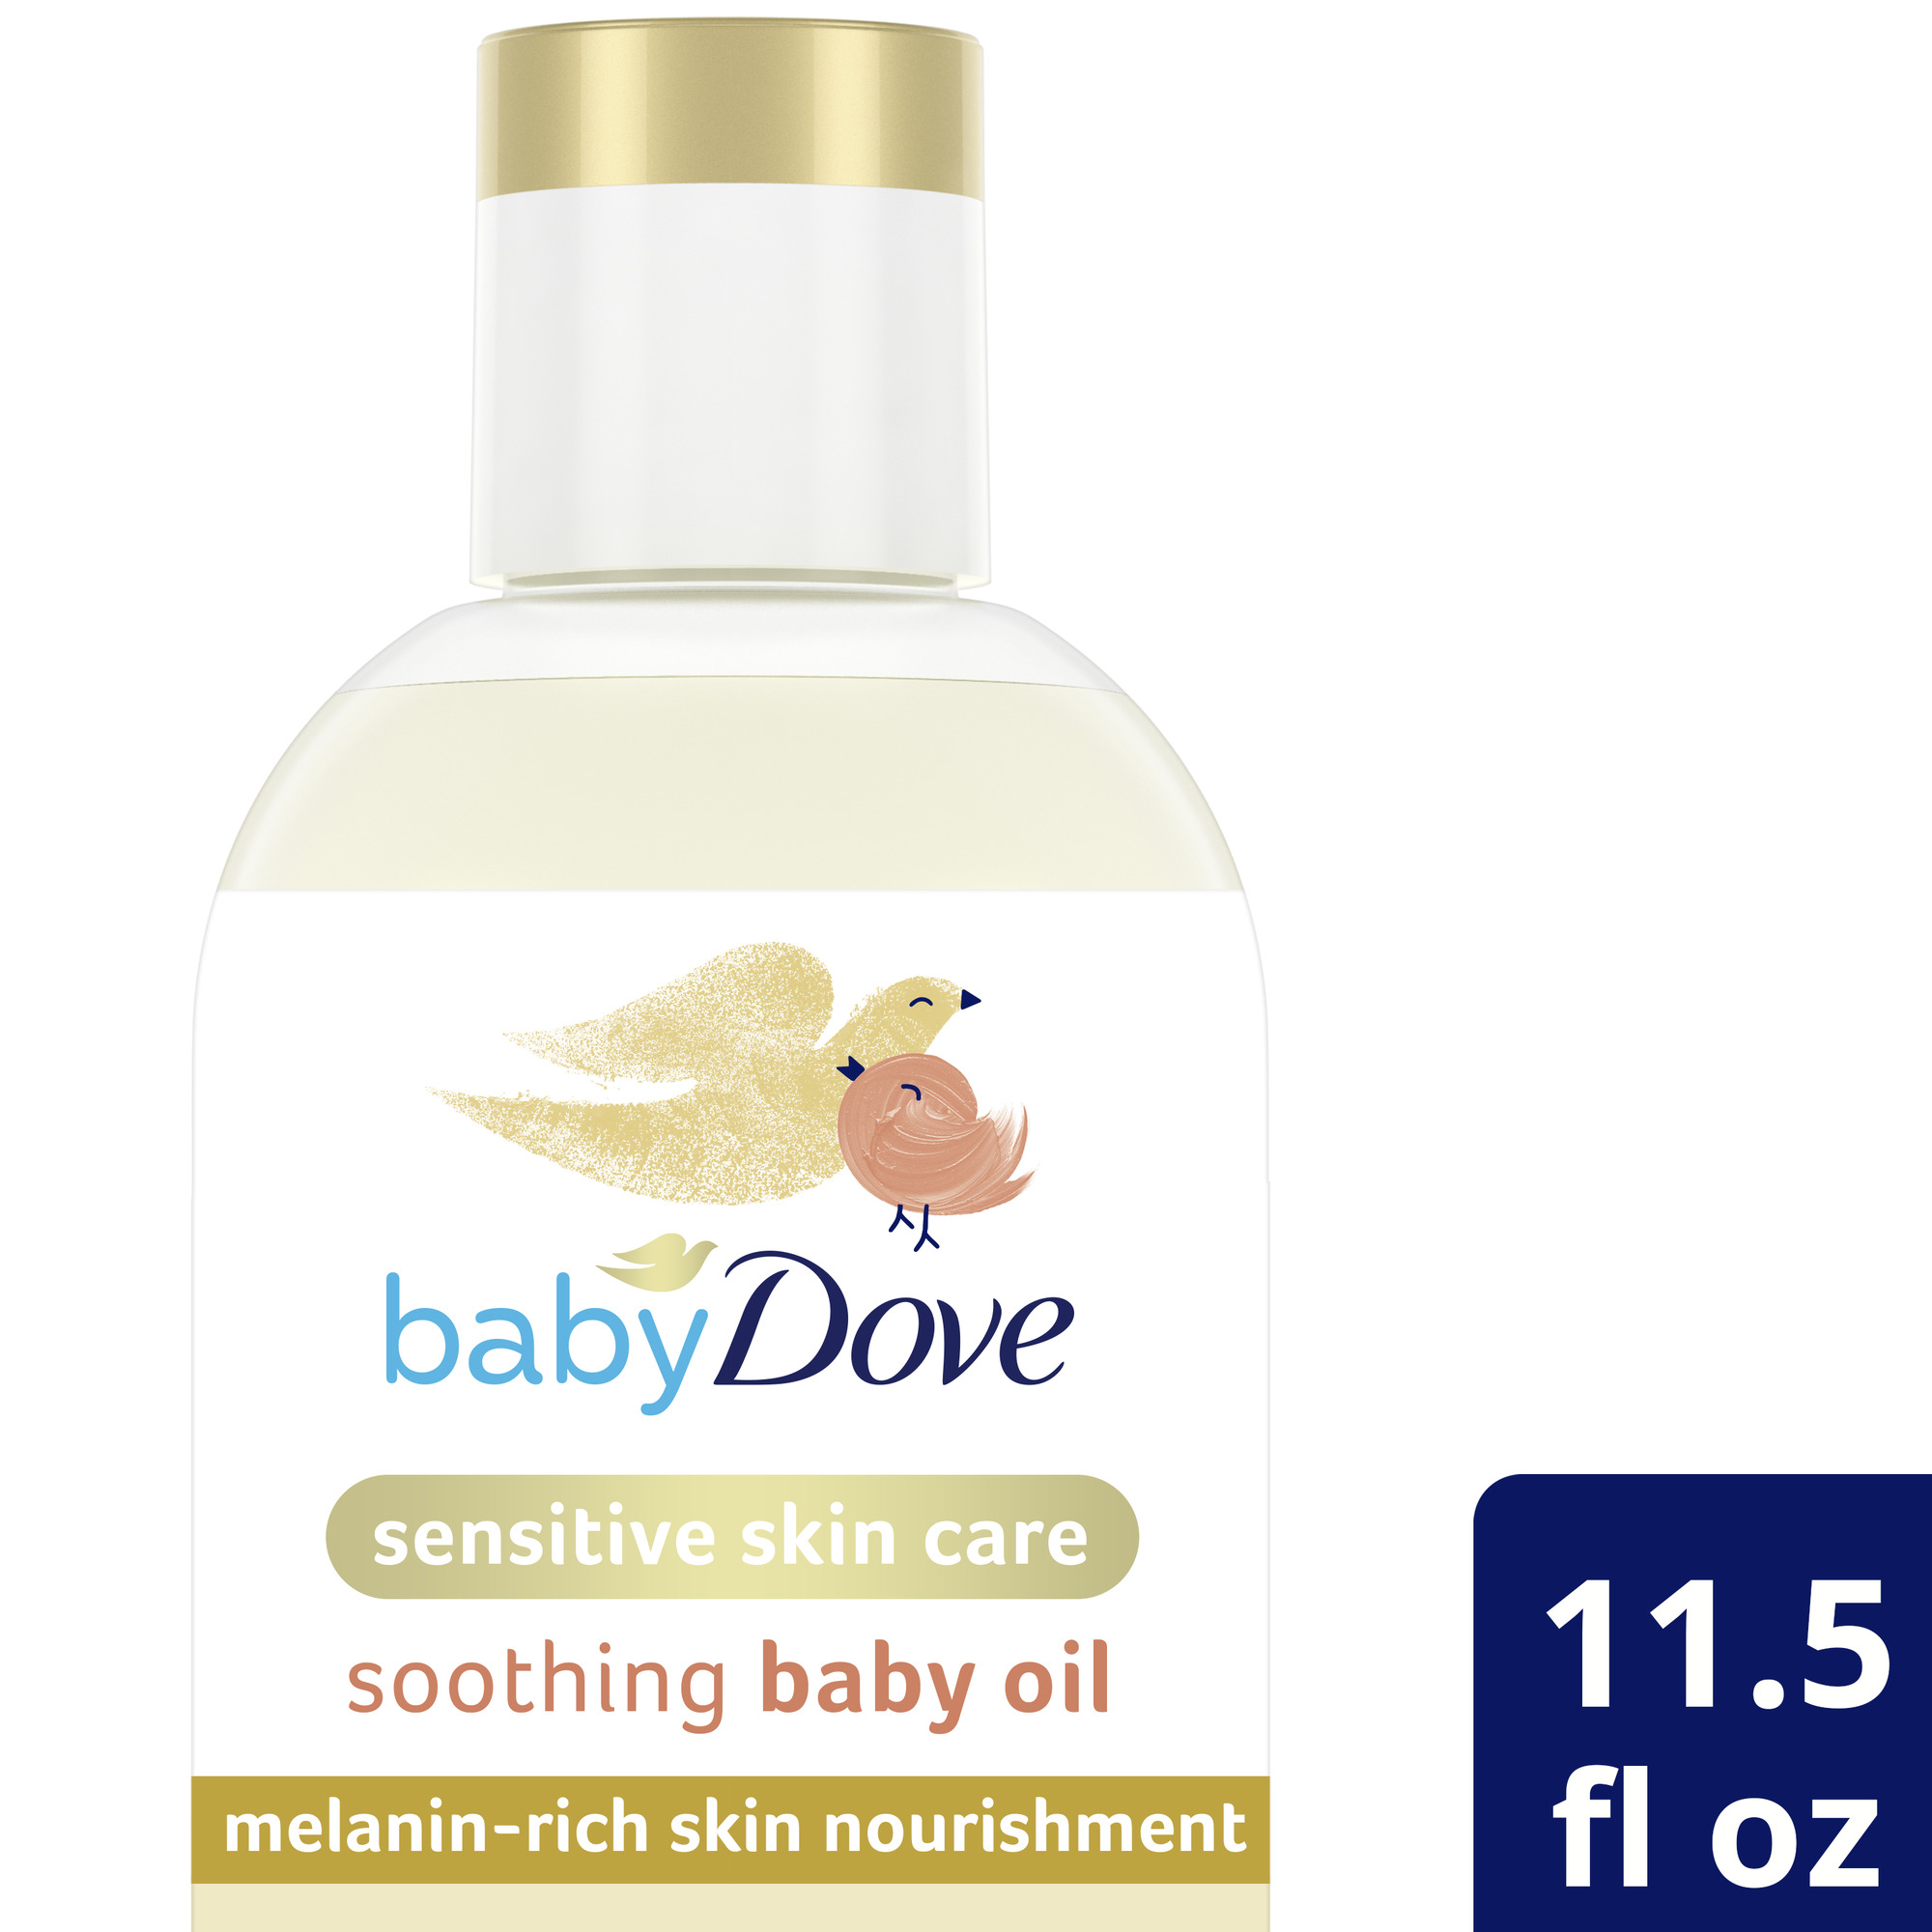 Baby Dove Melanin-Rich Skin Nourishment Baby Oil, 11.5 oz - image 1 of 2